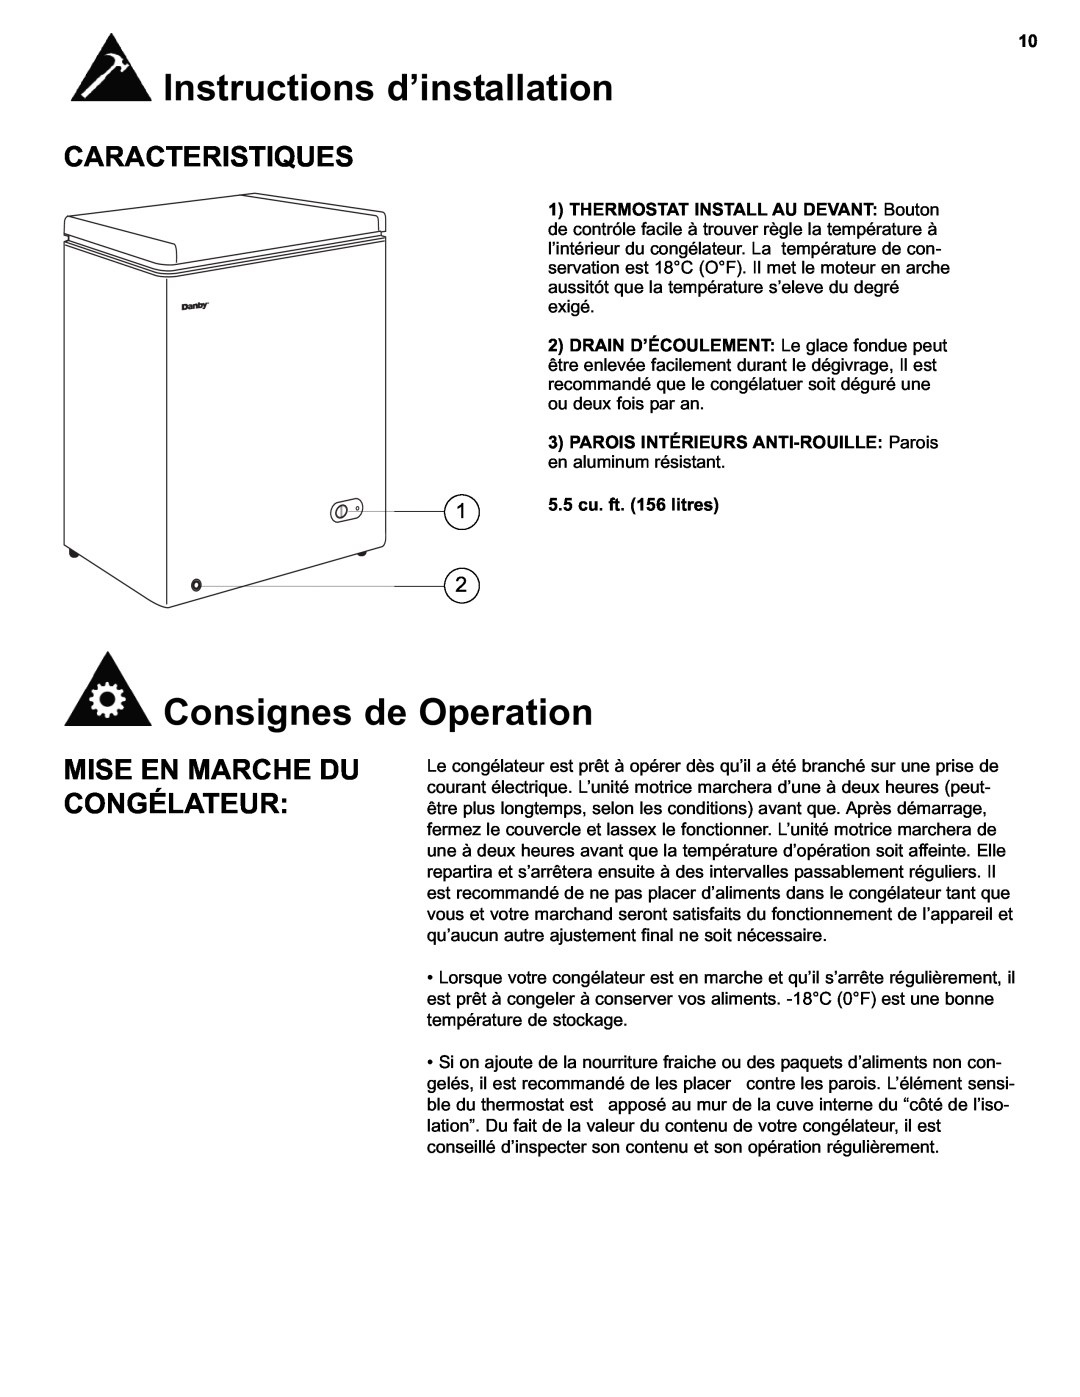 Danby DCF550W1 manual Consignes de Operation, Caracteristiques, Mise En Marche Du Congélateur, 5.5 cu. ft. 156 litres 